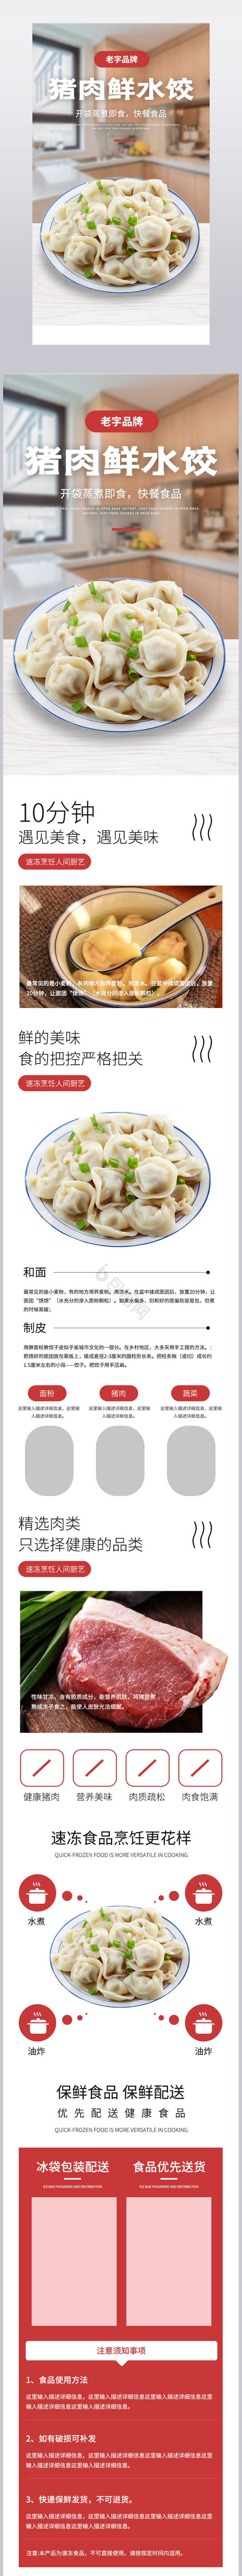 速冻饺子美味快捷便餐速健康食品详情页